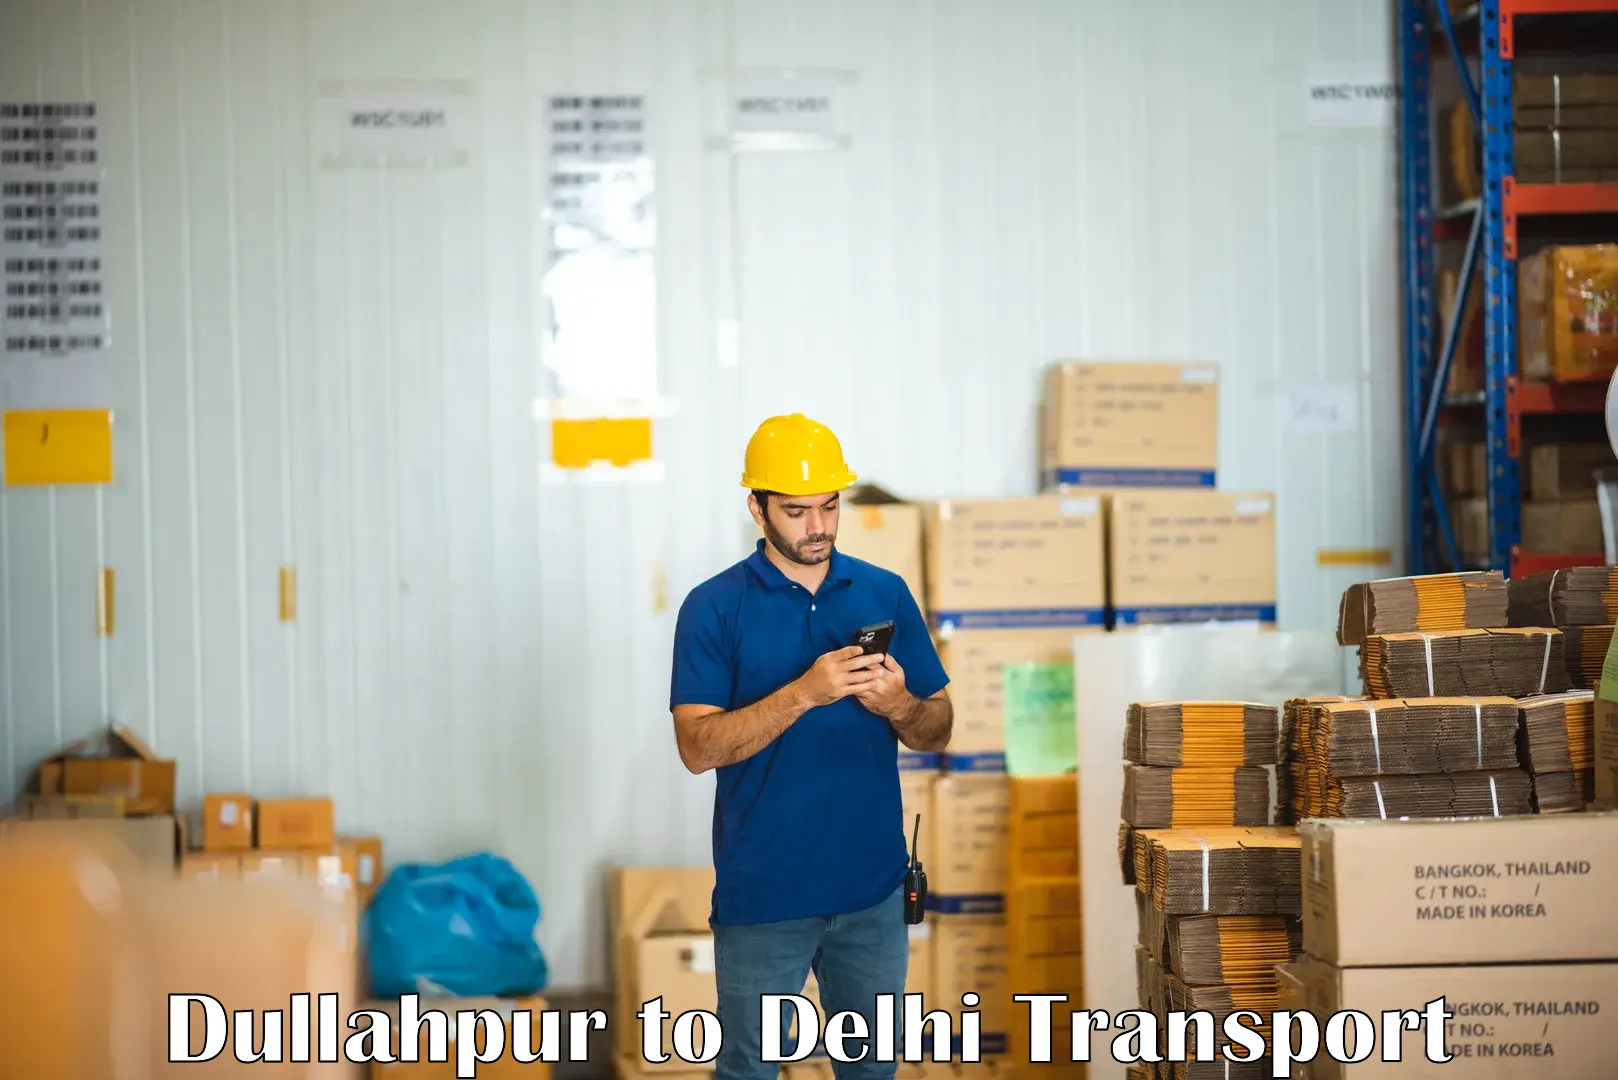 Parcel transport services Dullahpur to Delhi